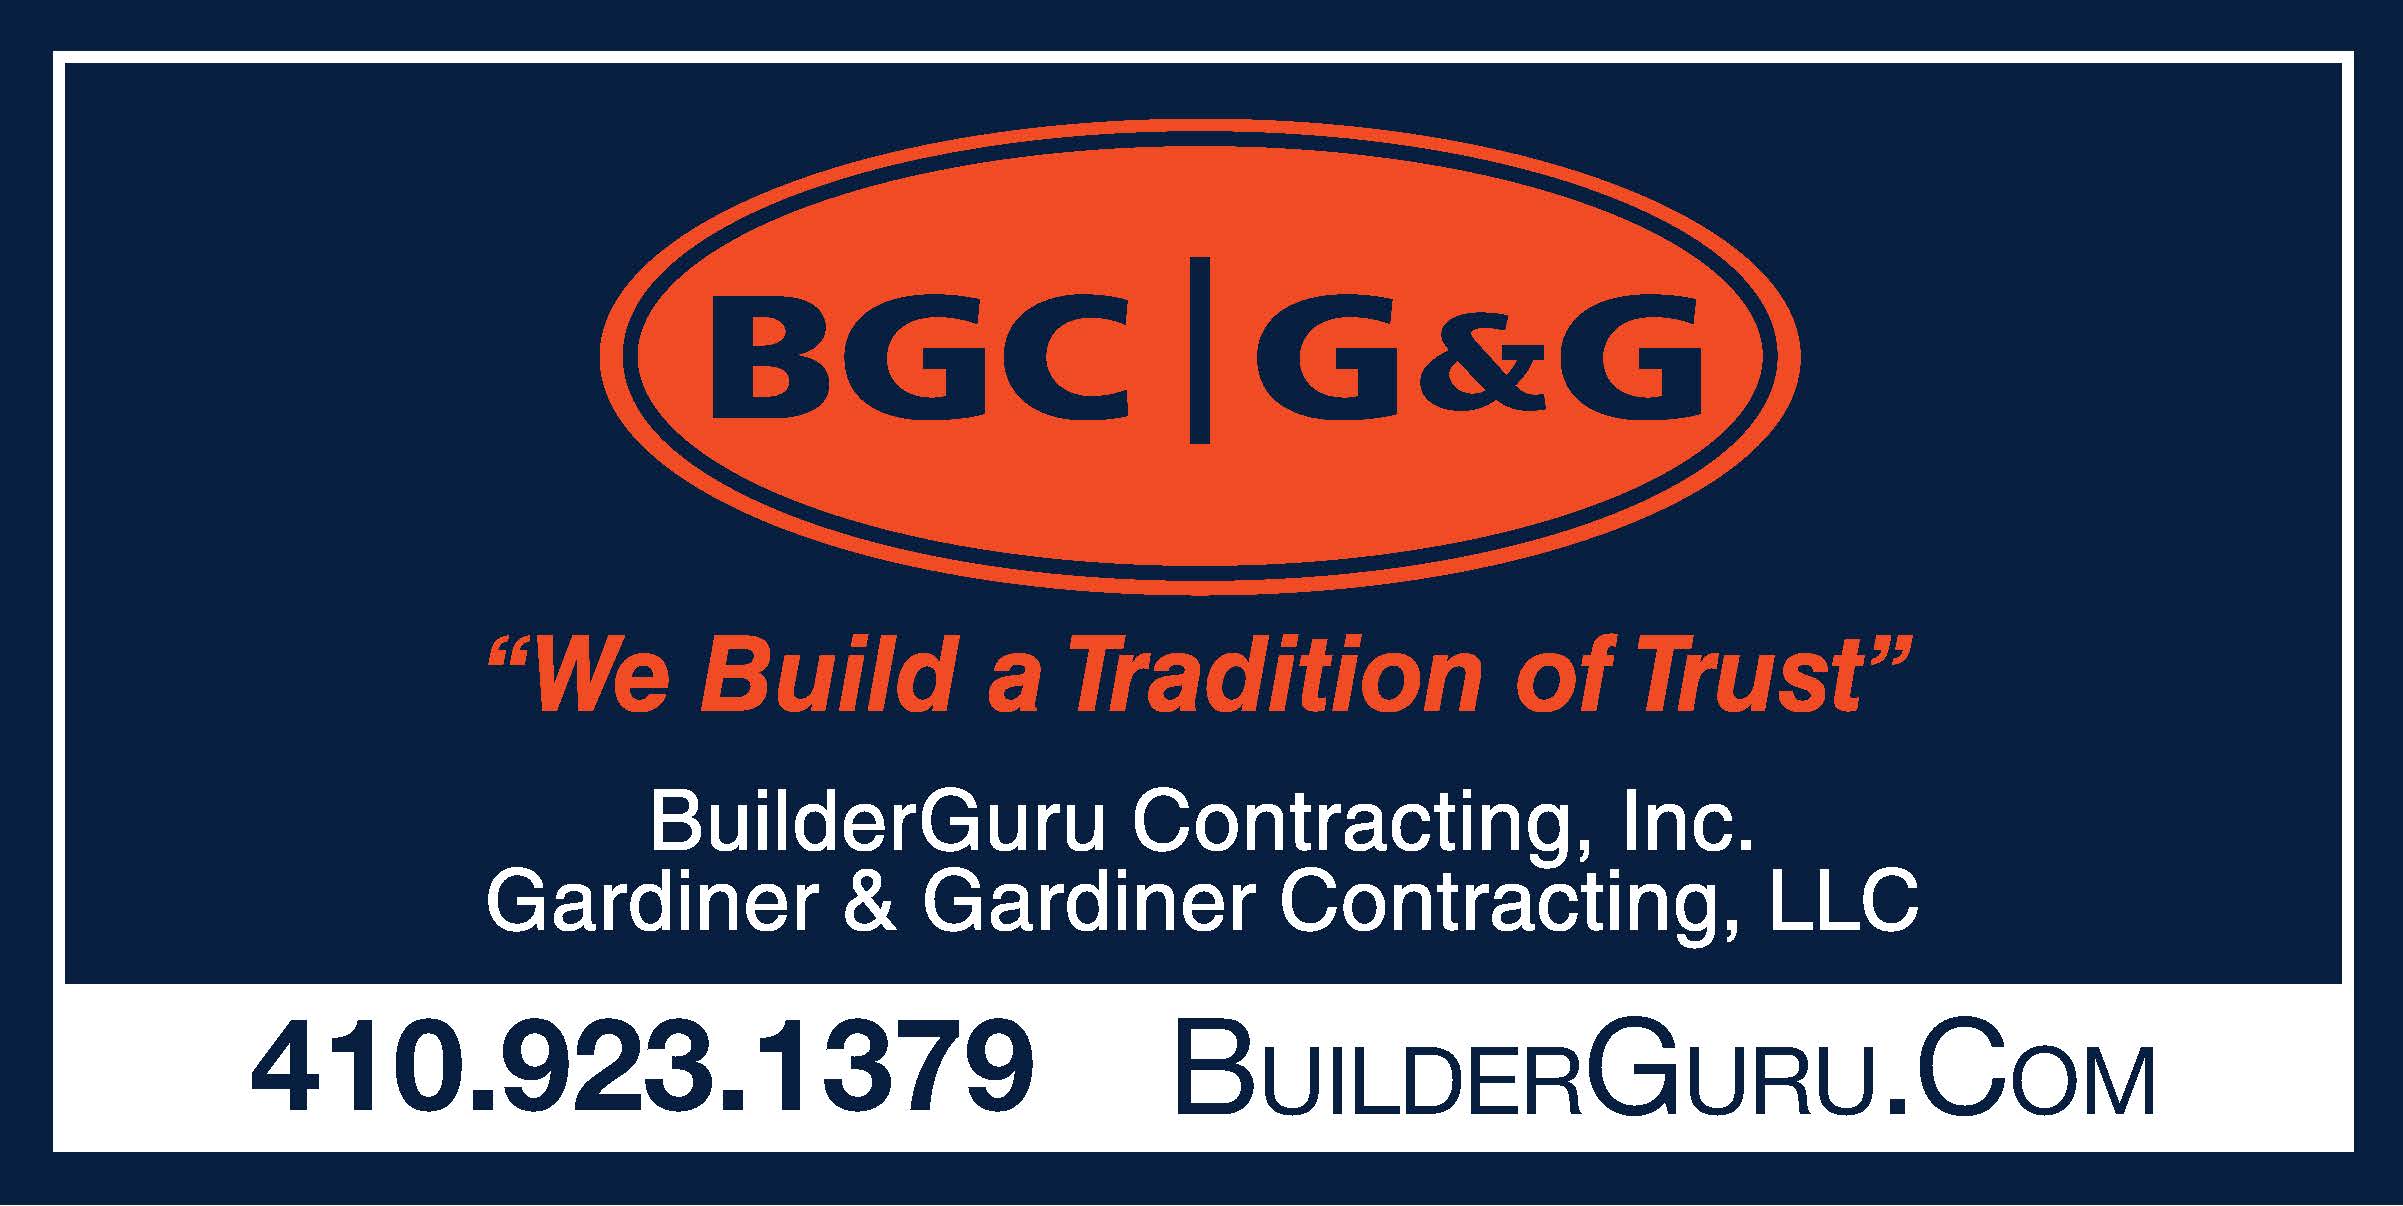 BuilderGuru Contracting, Inc.